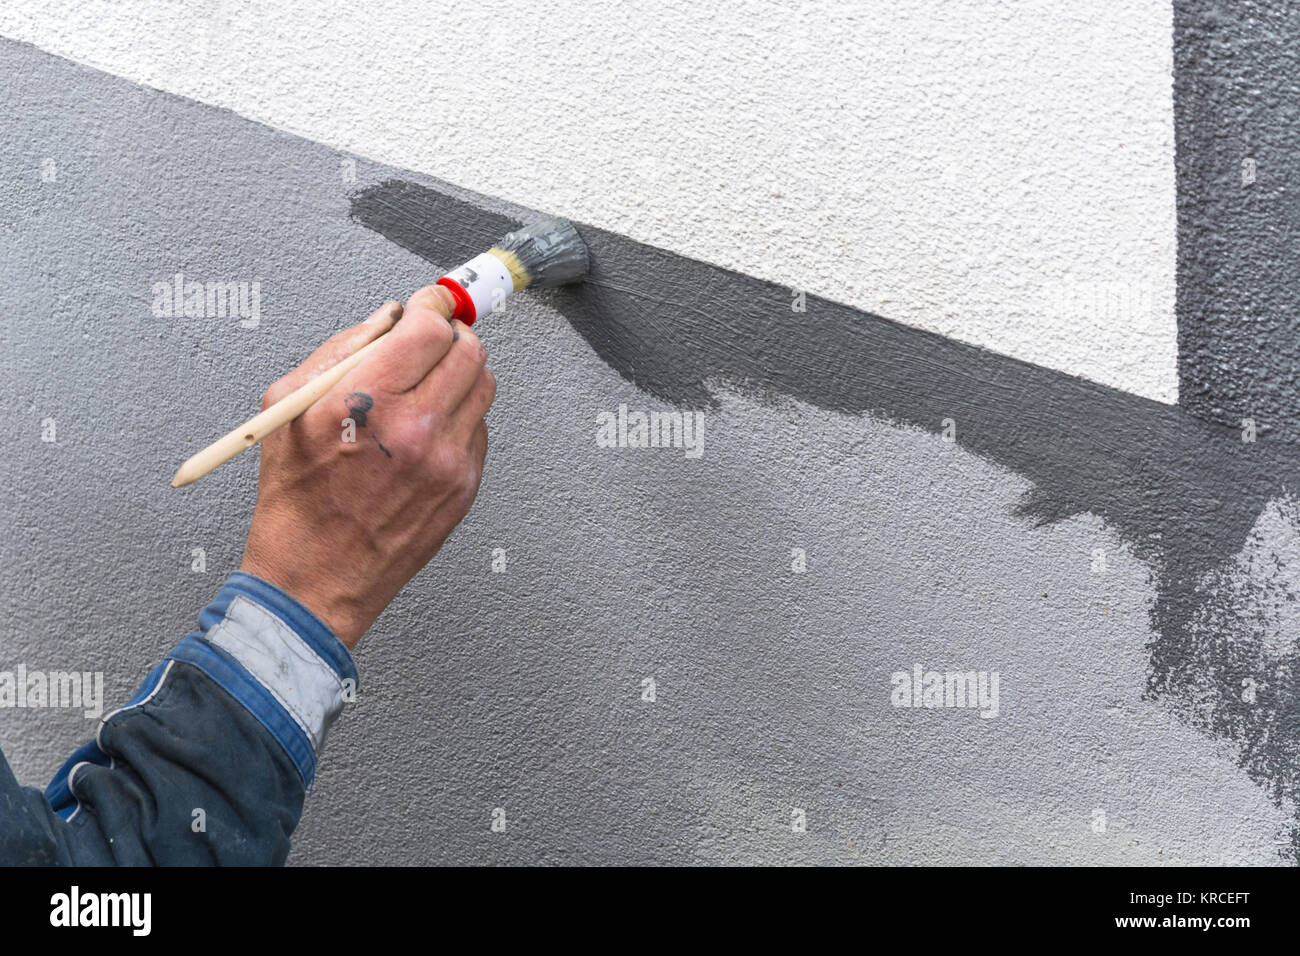 Nahaufnahme Arm eines Anstreicher mit Farbrolle in der Hand streicht eine Hauswand mit grauer Farbe. Stock Photo